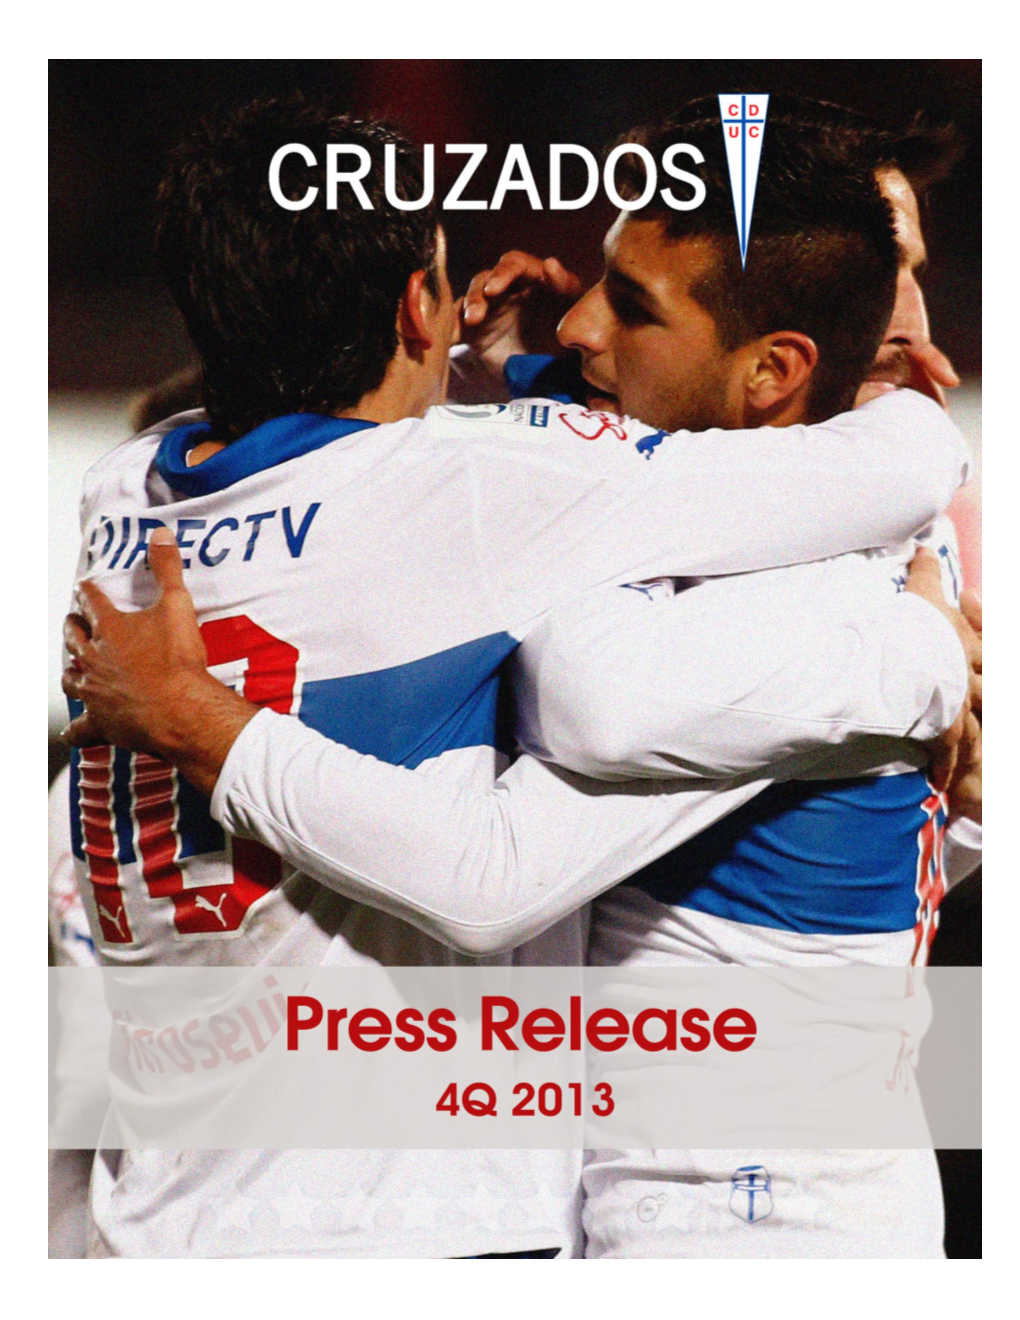 Cruzados Press Release 4Q 2